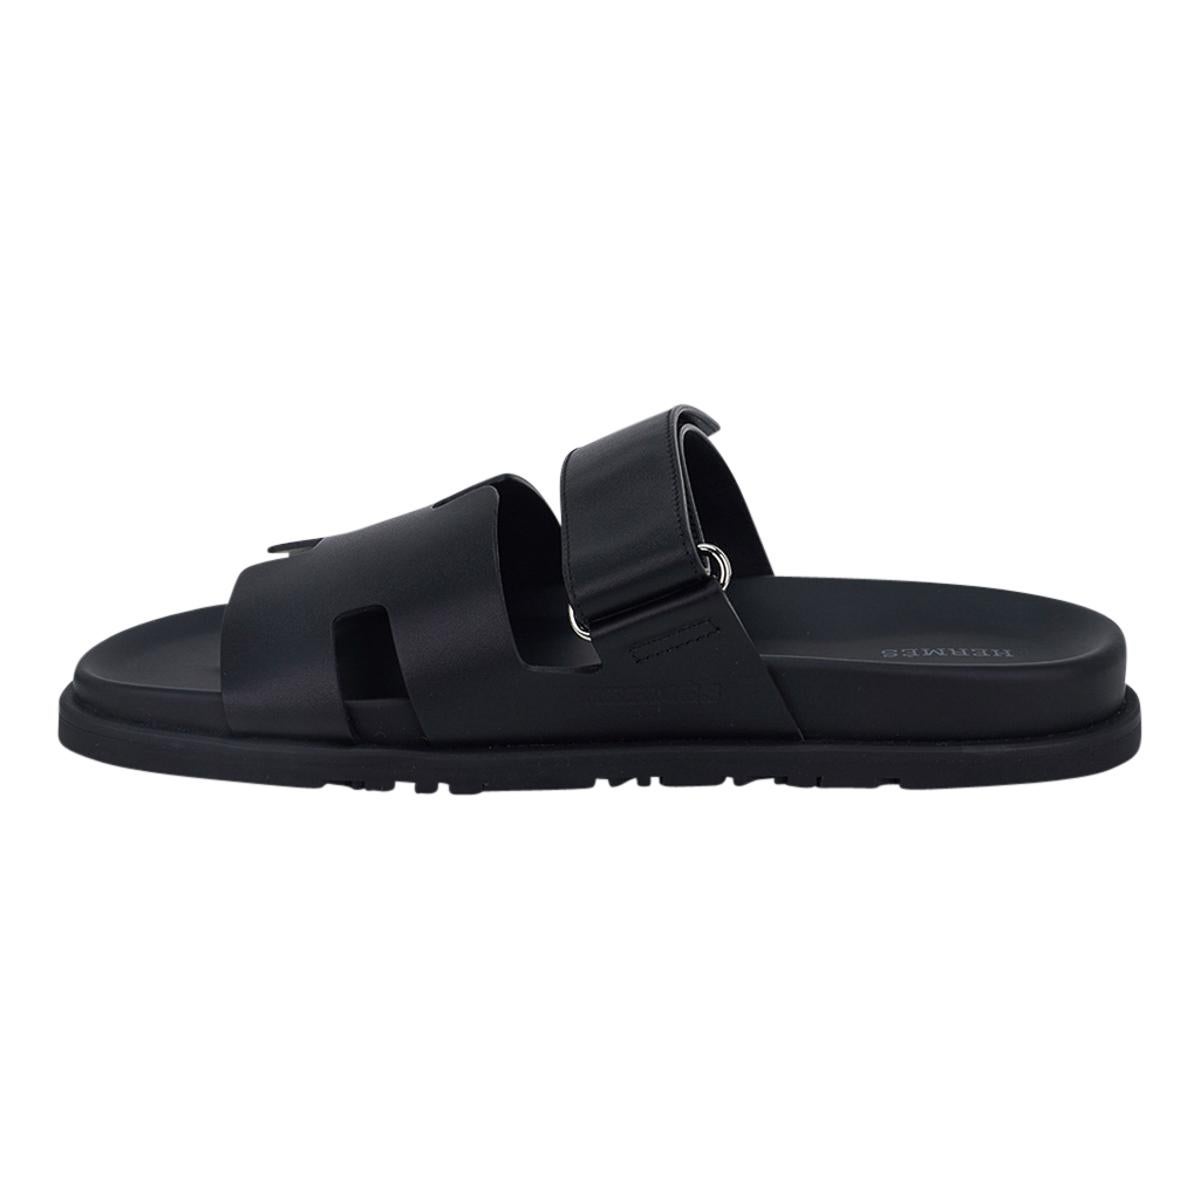 Hermes Men's Chypre Black Calfskin Leather Sandal 43 / 10 For Sale 1